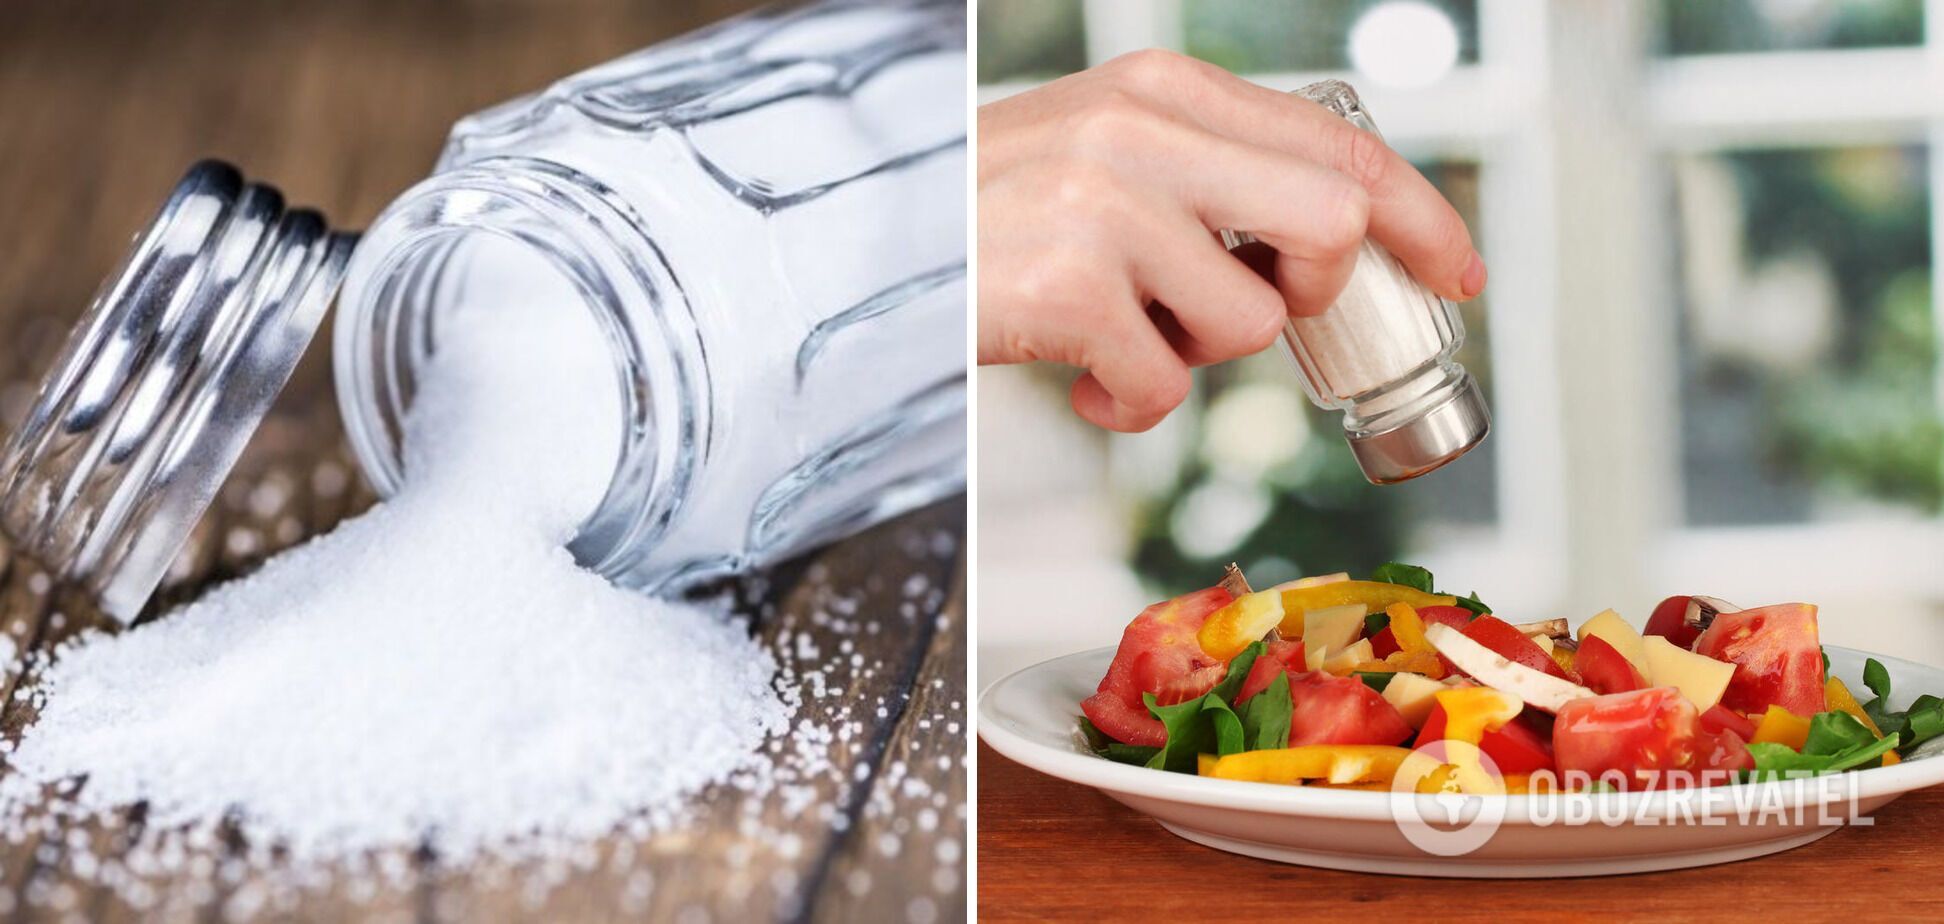 Соль нужно употреблять в умеренных количествах.